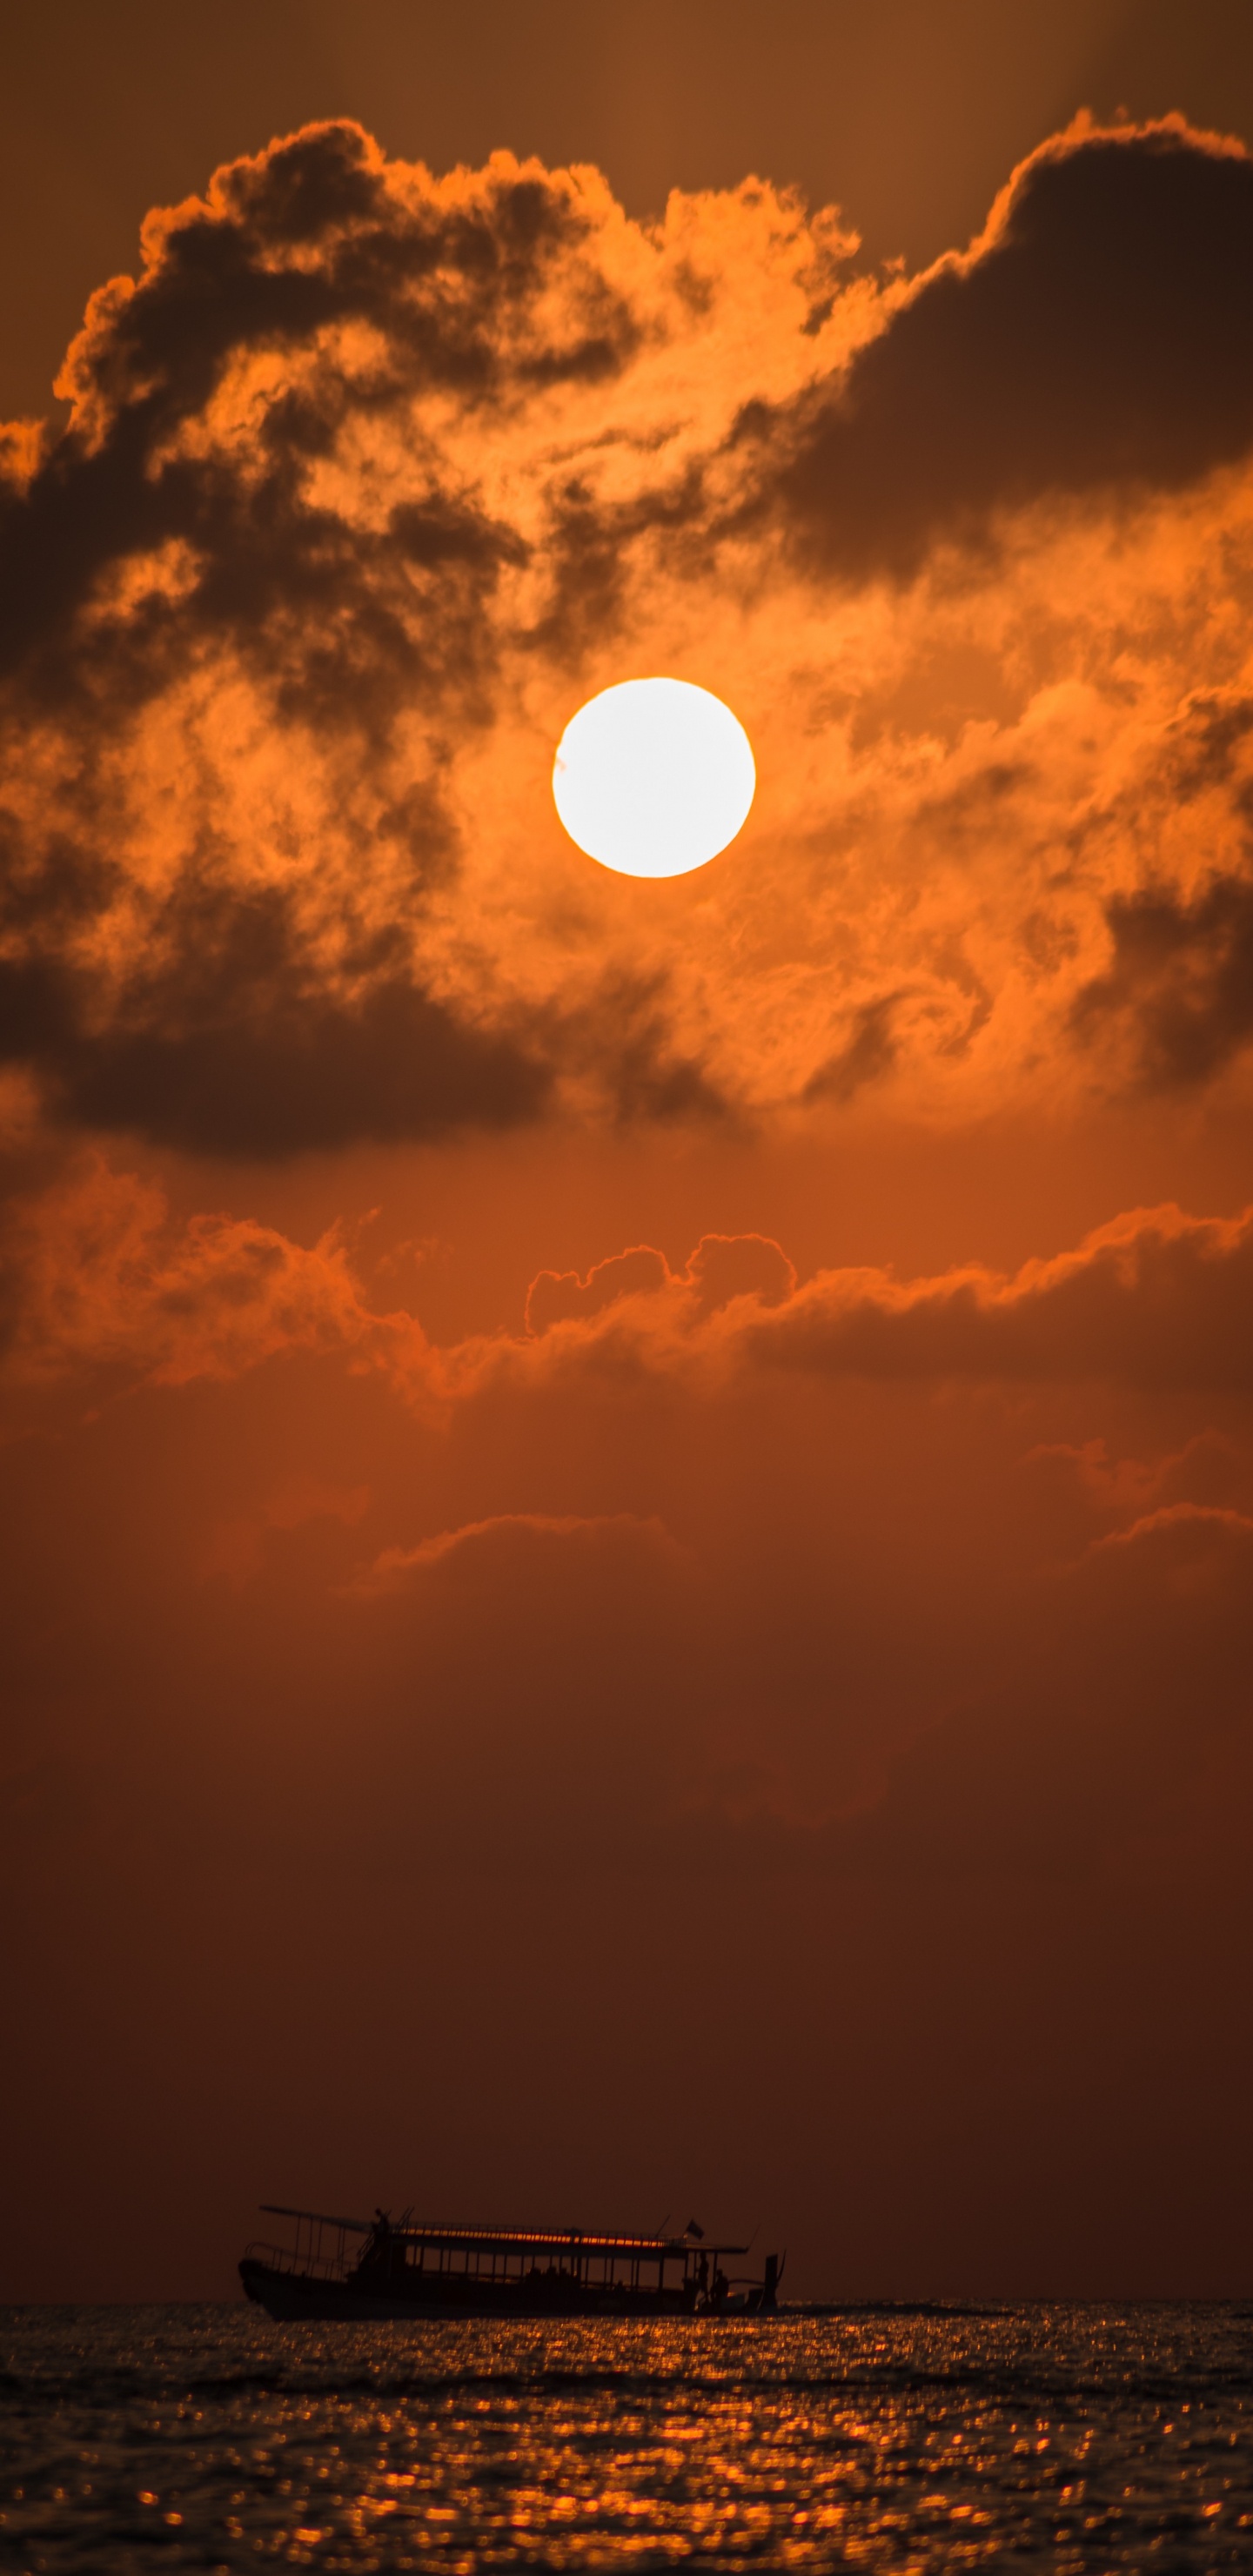 Sunset, Afterglow, Sun, Cloud, Dusk. Wallpaper in 1440x2960 Resolution